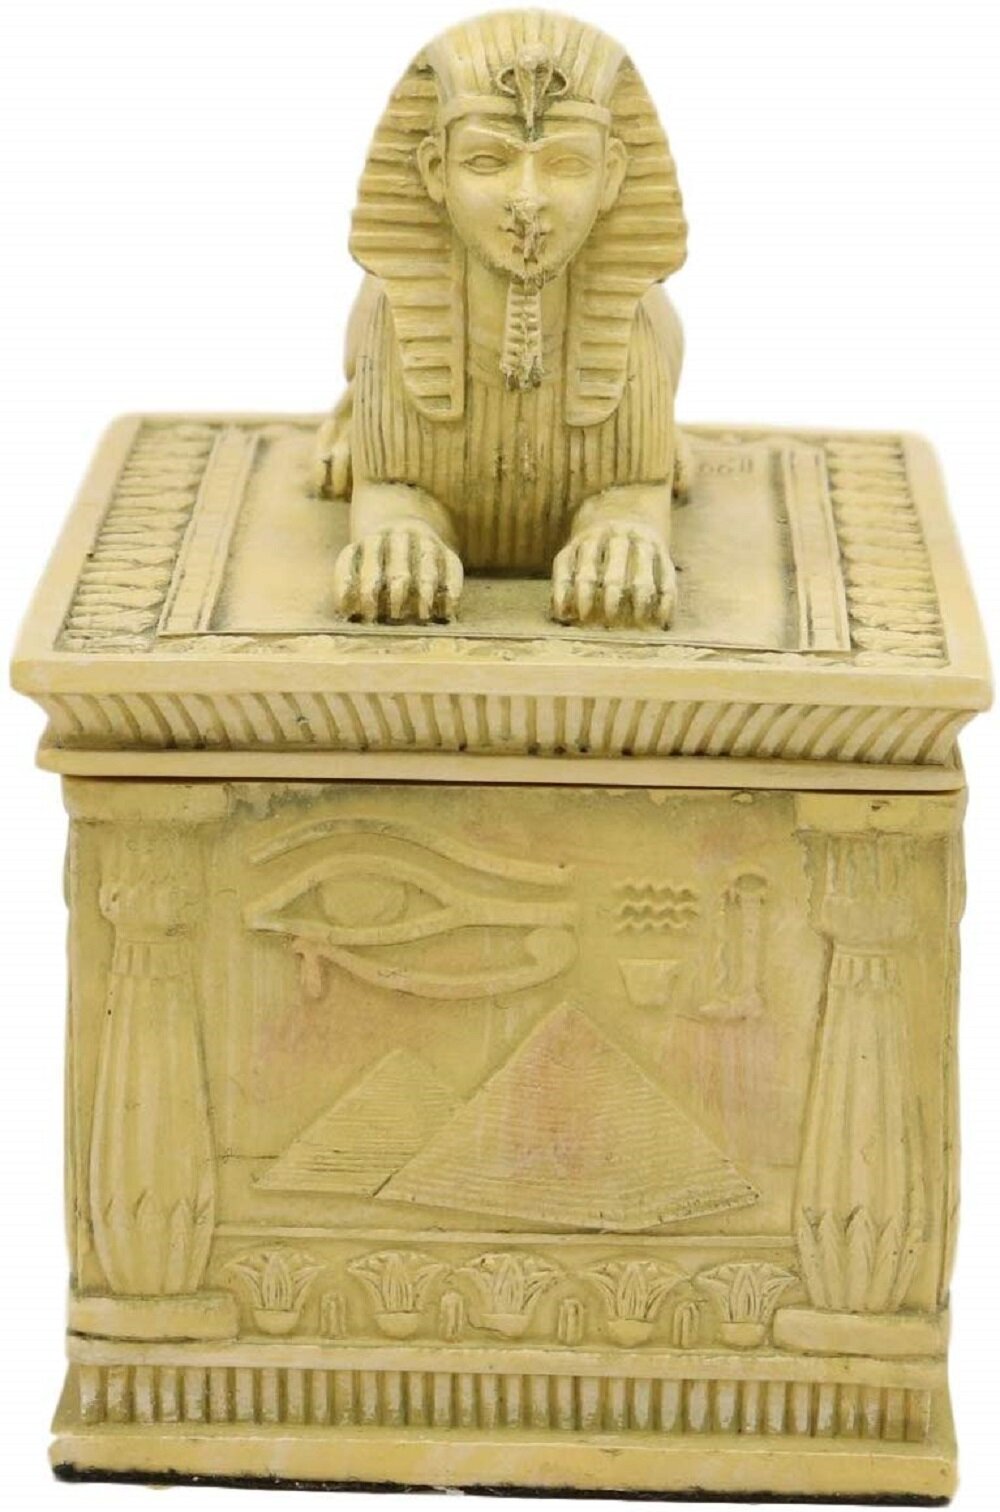 4.25 Inch Egyptian Gods Pyramid Shaped Jewelry//Trinket Box Figurine